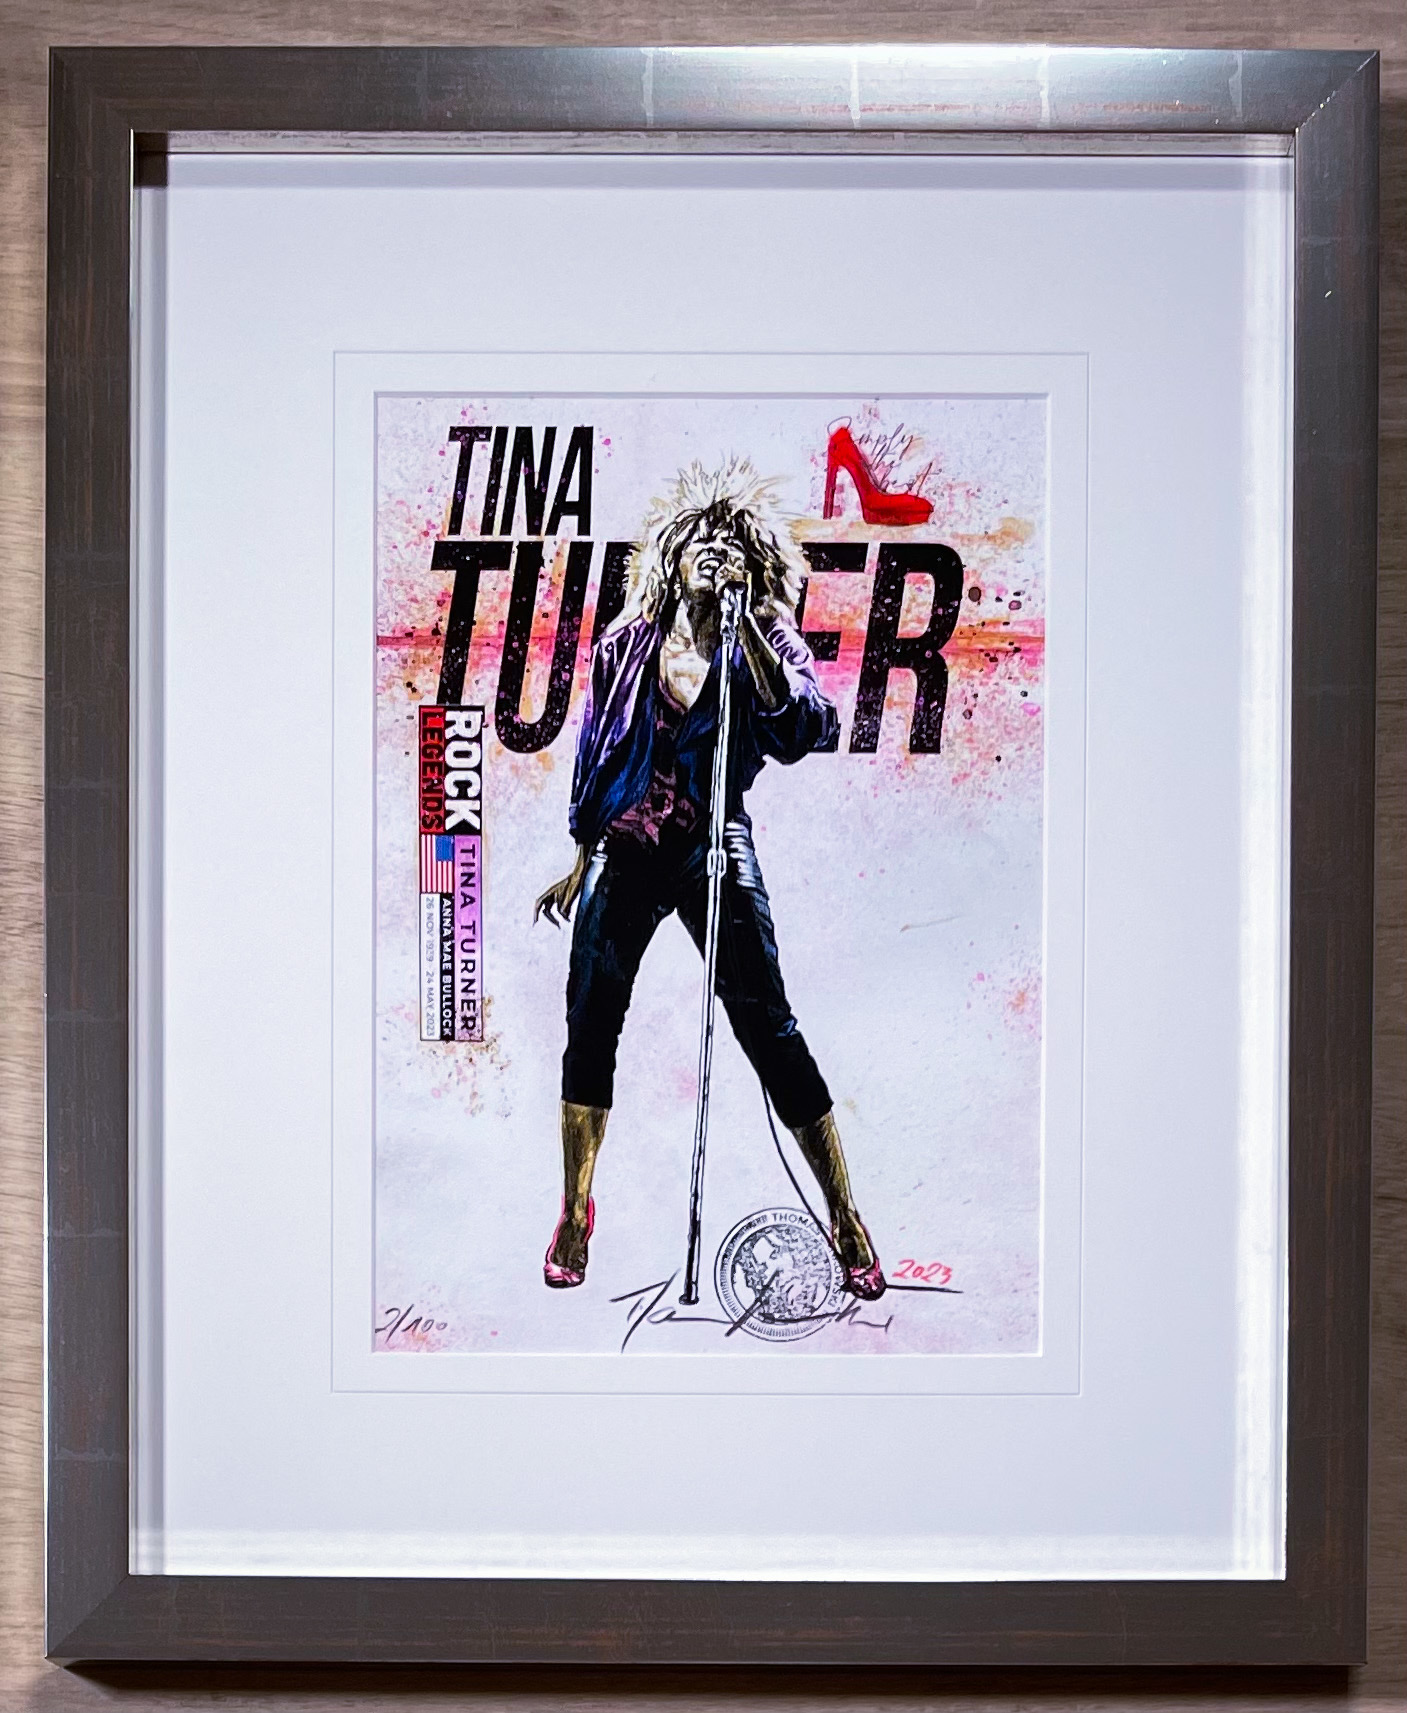 Thomas Jankowski "Tina Turner (klein)"